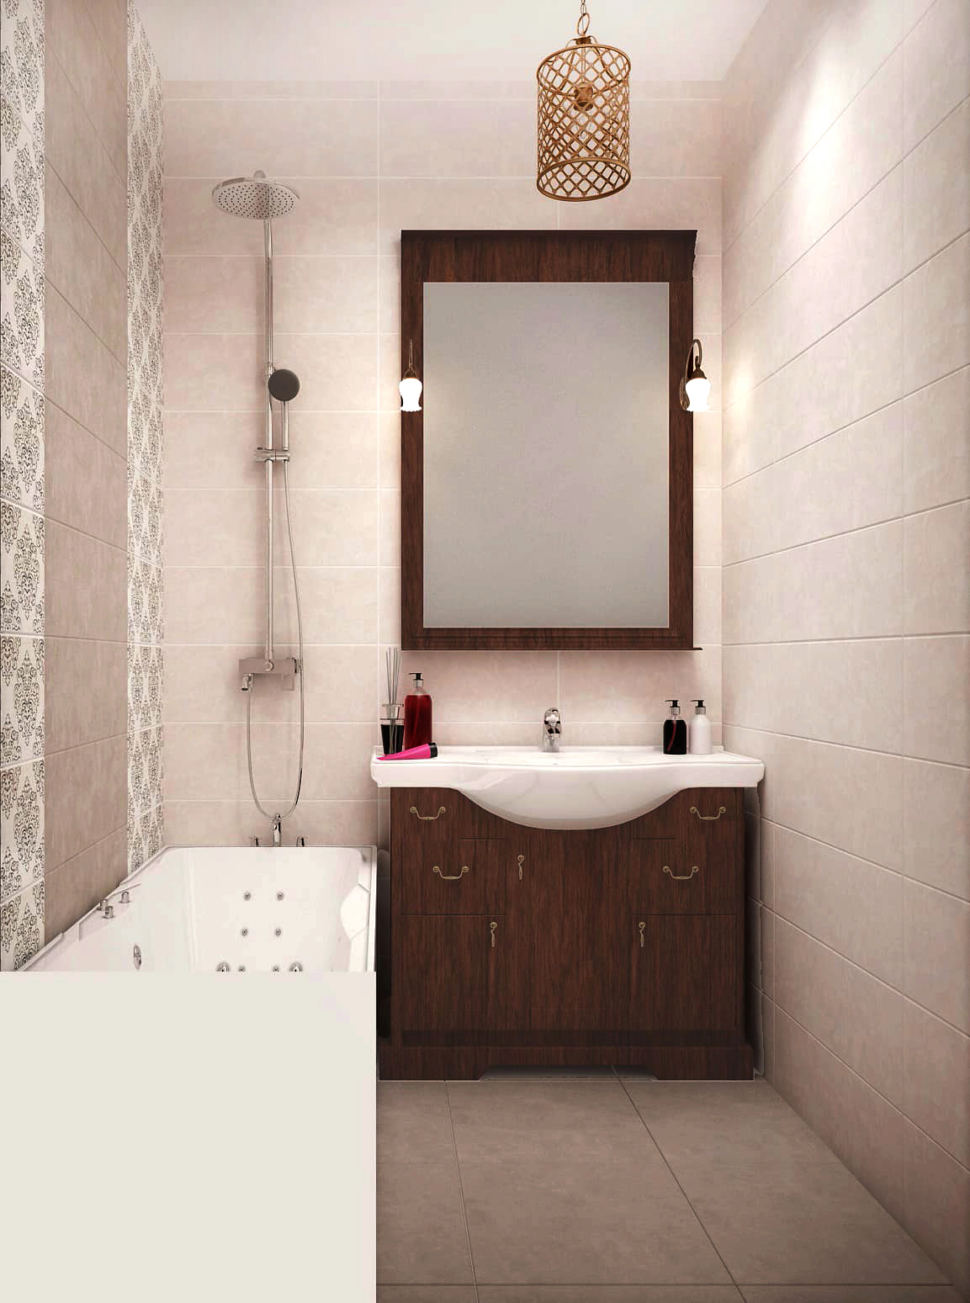  Визуализация ванной комнаты 3 кв.м в белых оттенках, ванна, белые открытые полки, светильники, керамическая плитка